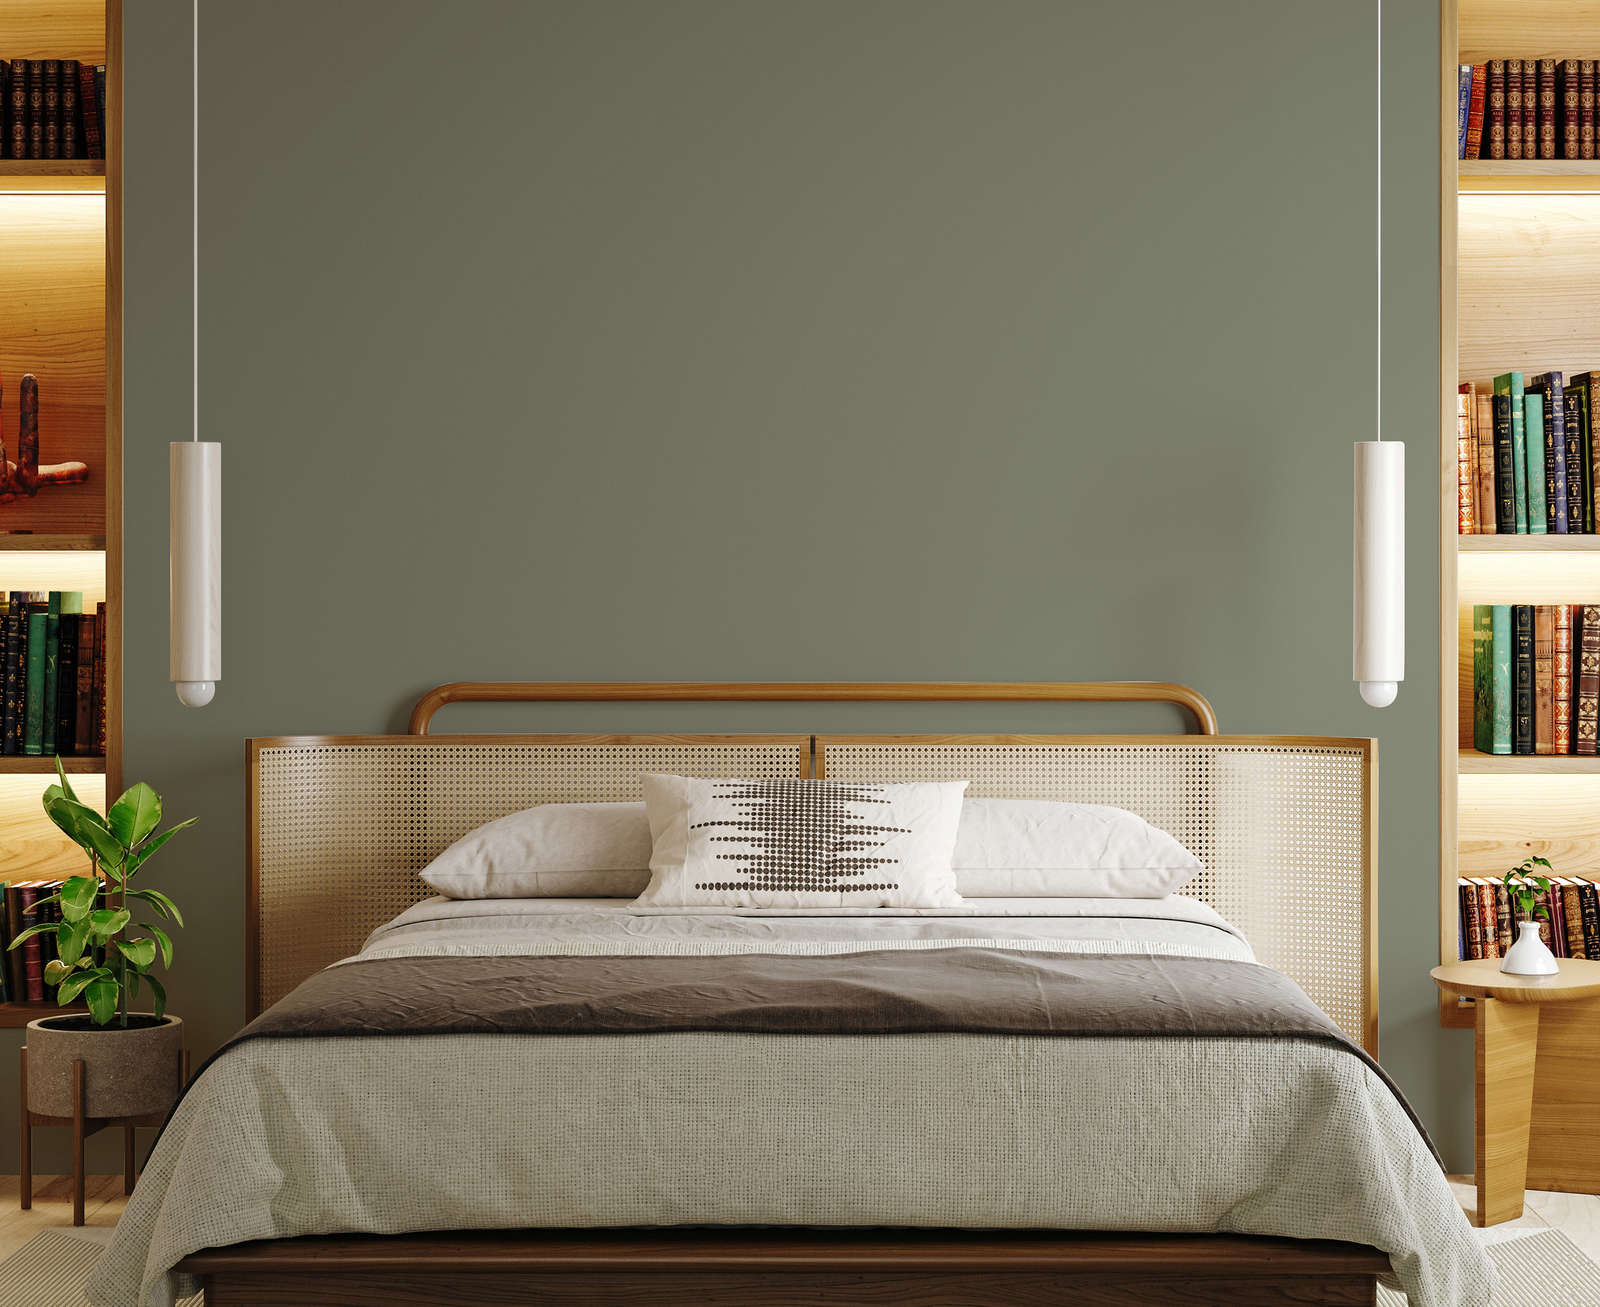 Deze mooie vintage stijl slaapkamer combineert houten kasten, een vintage cane webbing bed met een prachtige olijfgroene muur, geverfd met de New Walls muurverf Persuasive Olive Green.